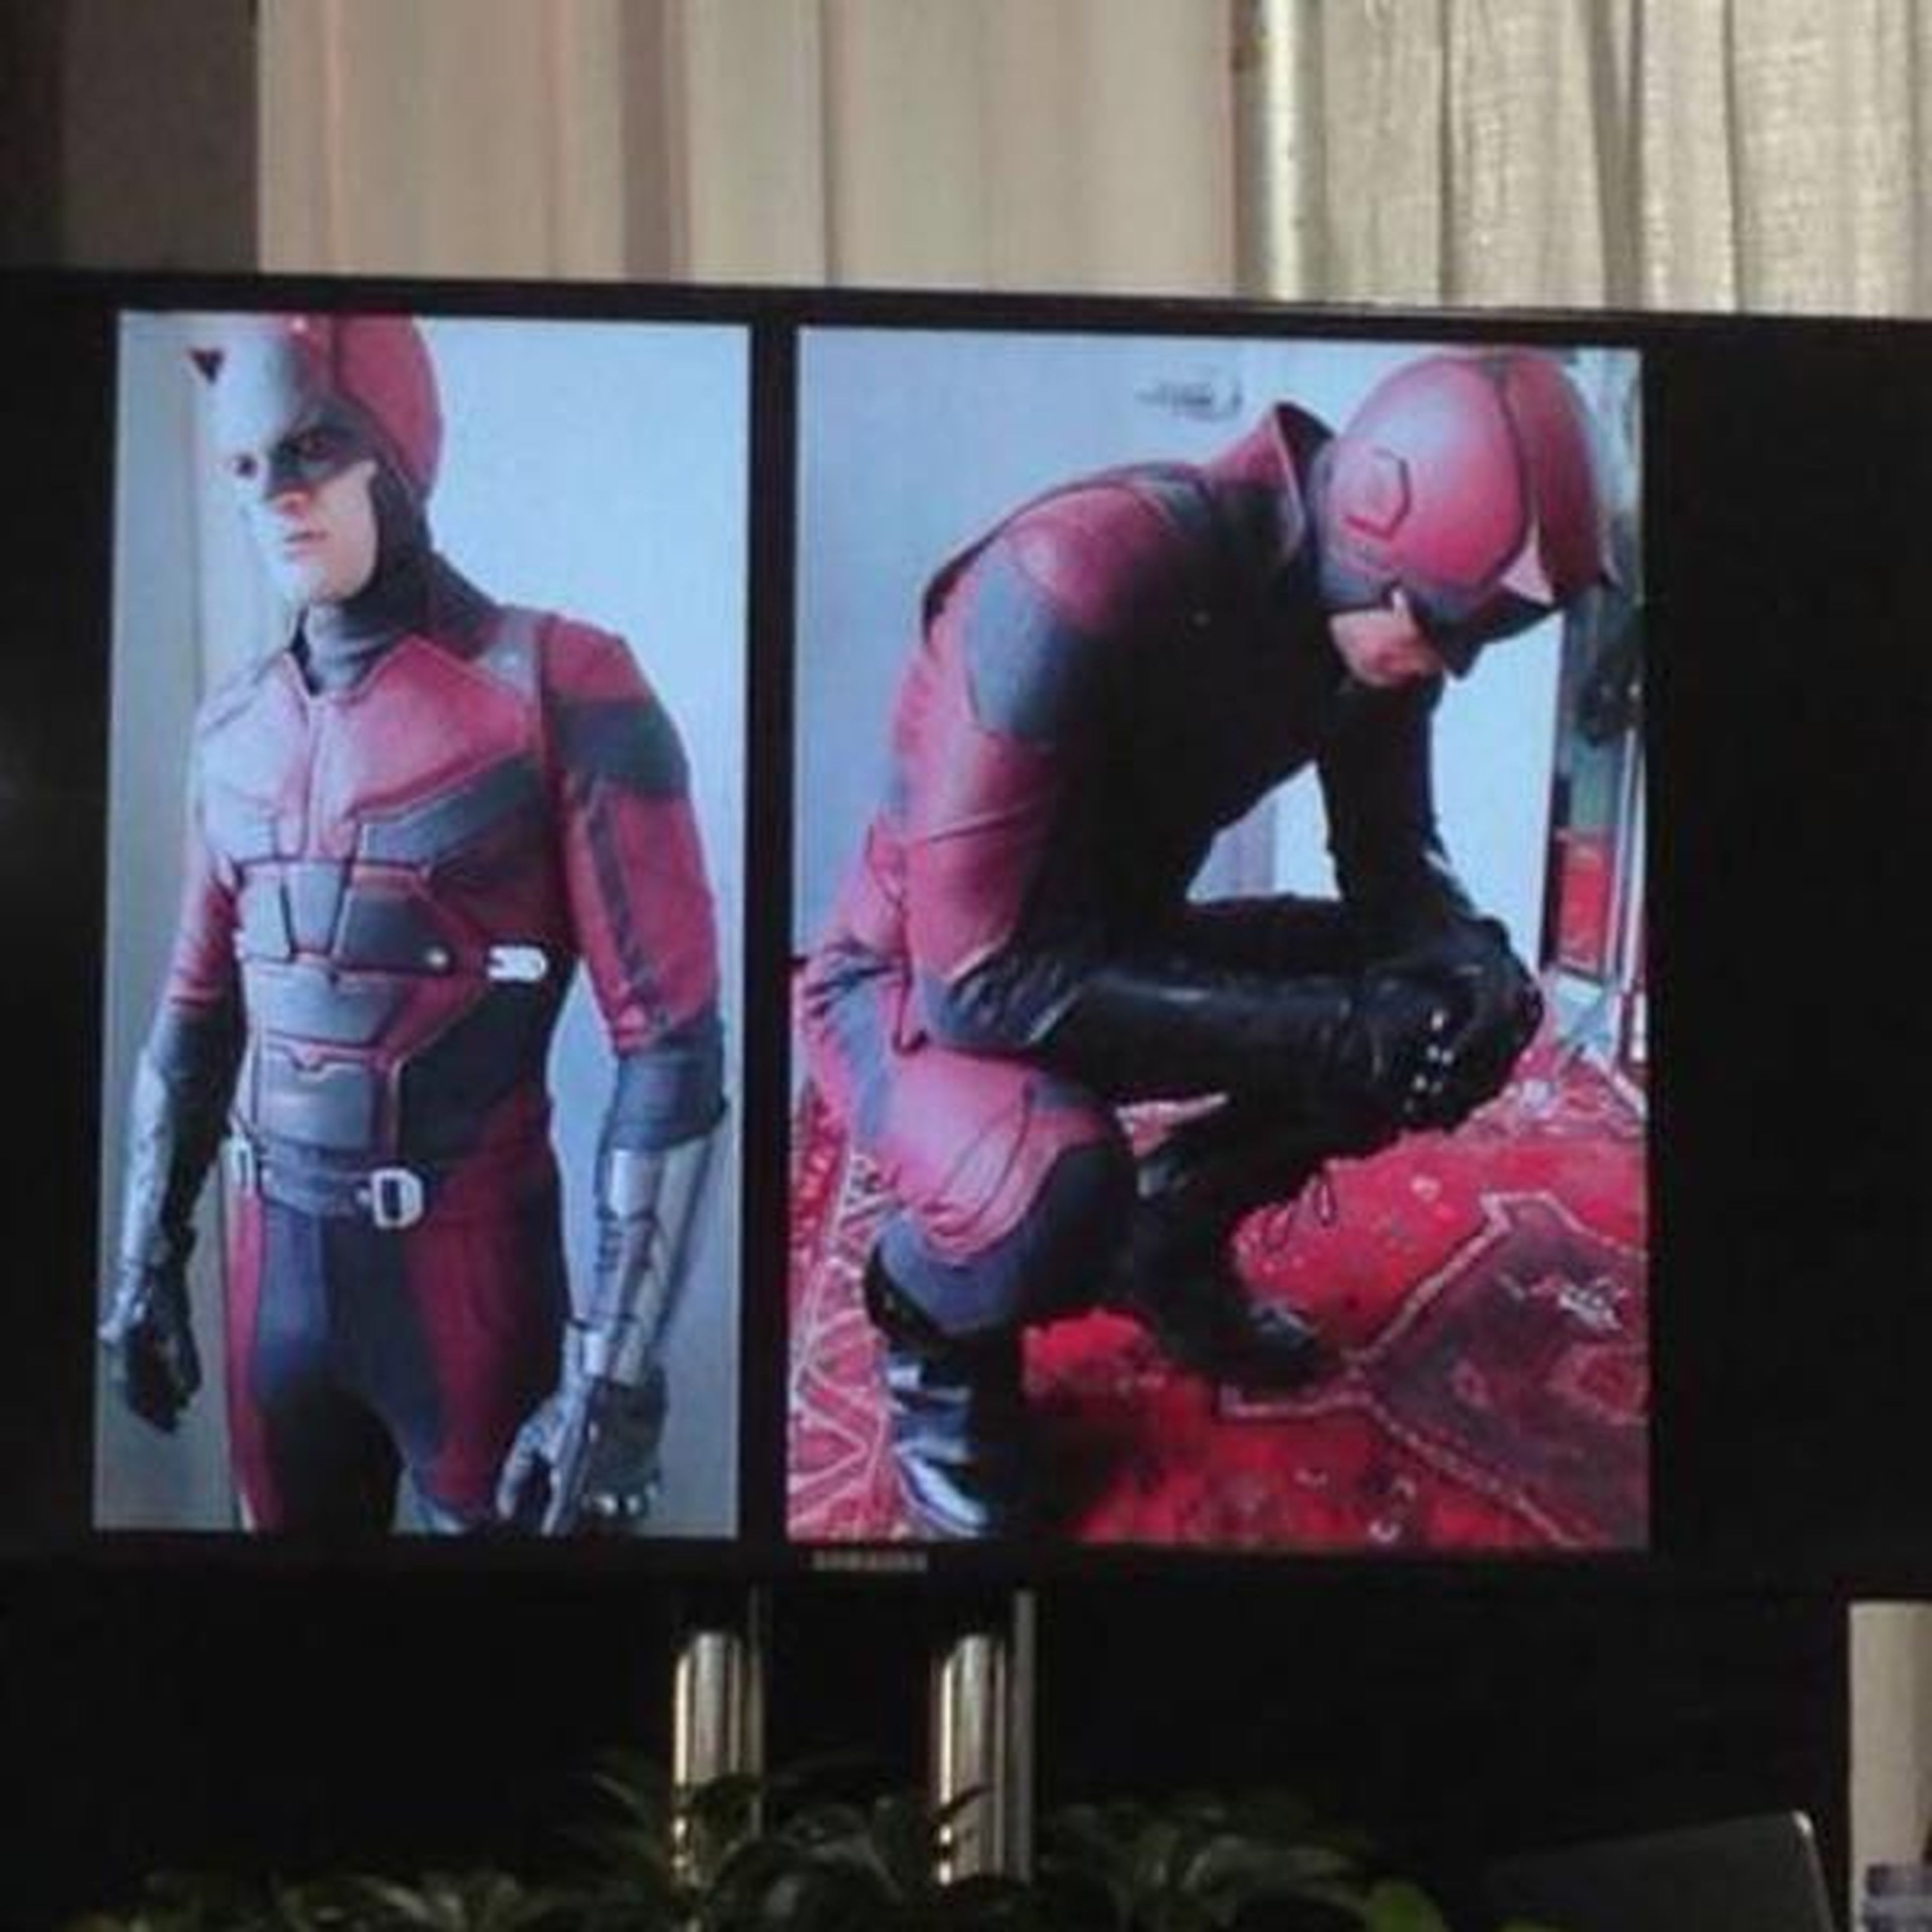 Daredevil temporada 2: Así es el nuevo traje